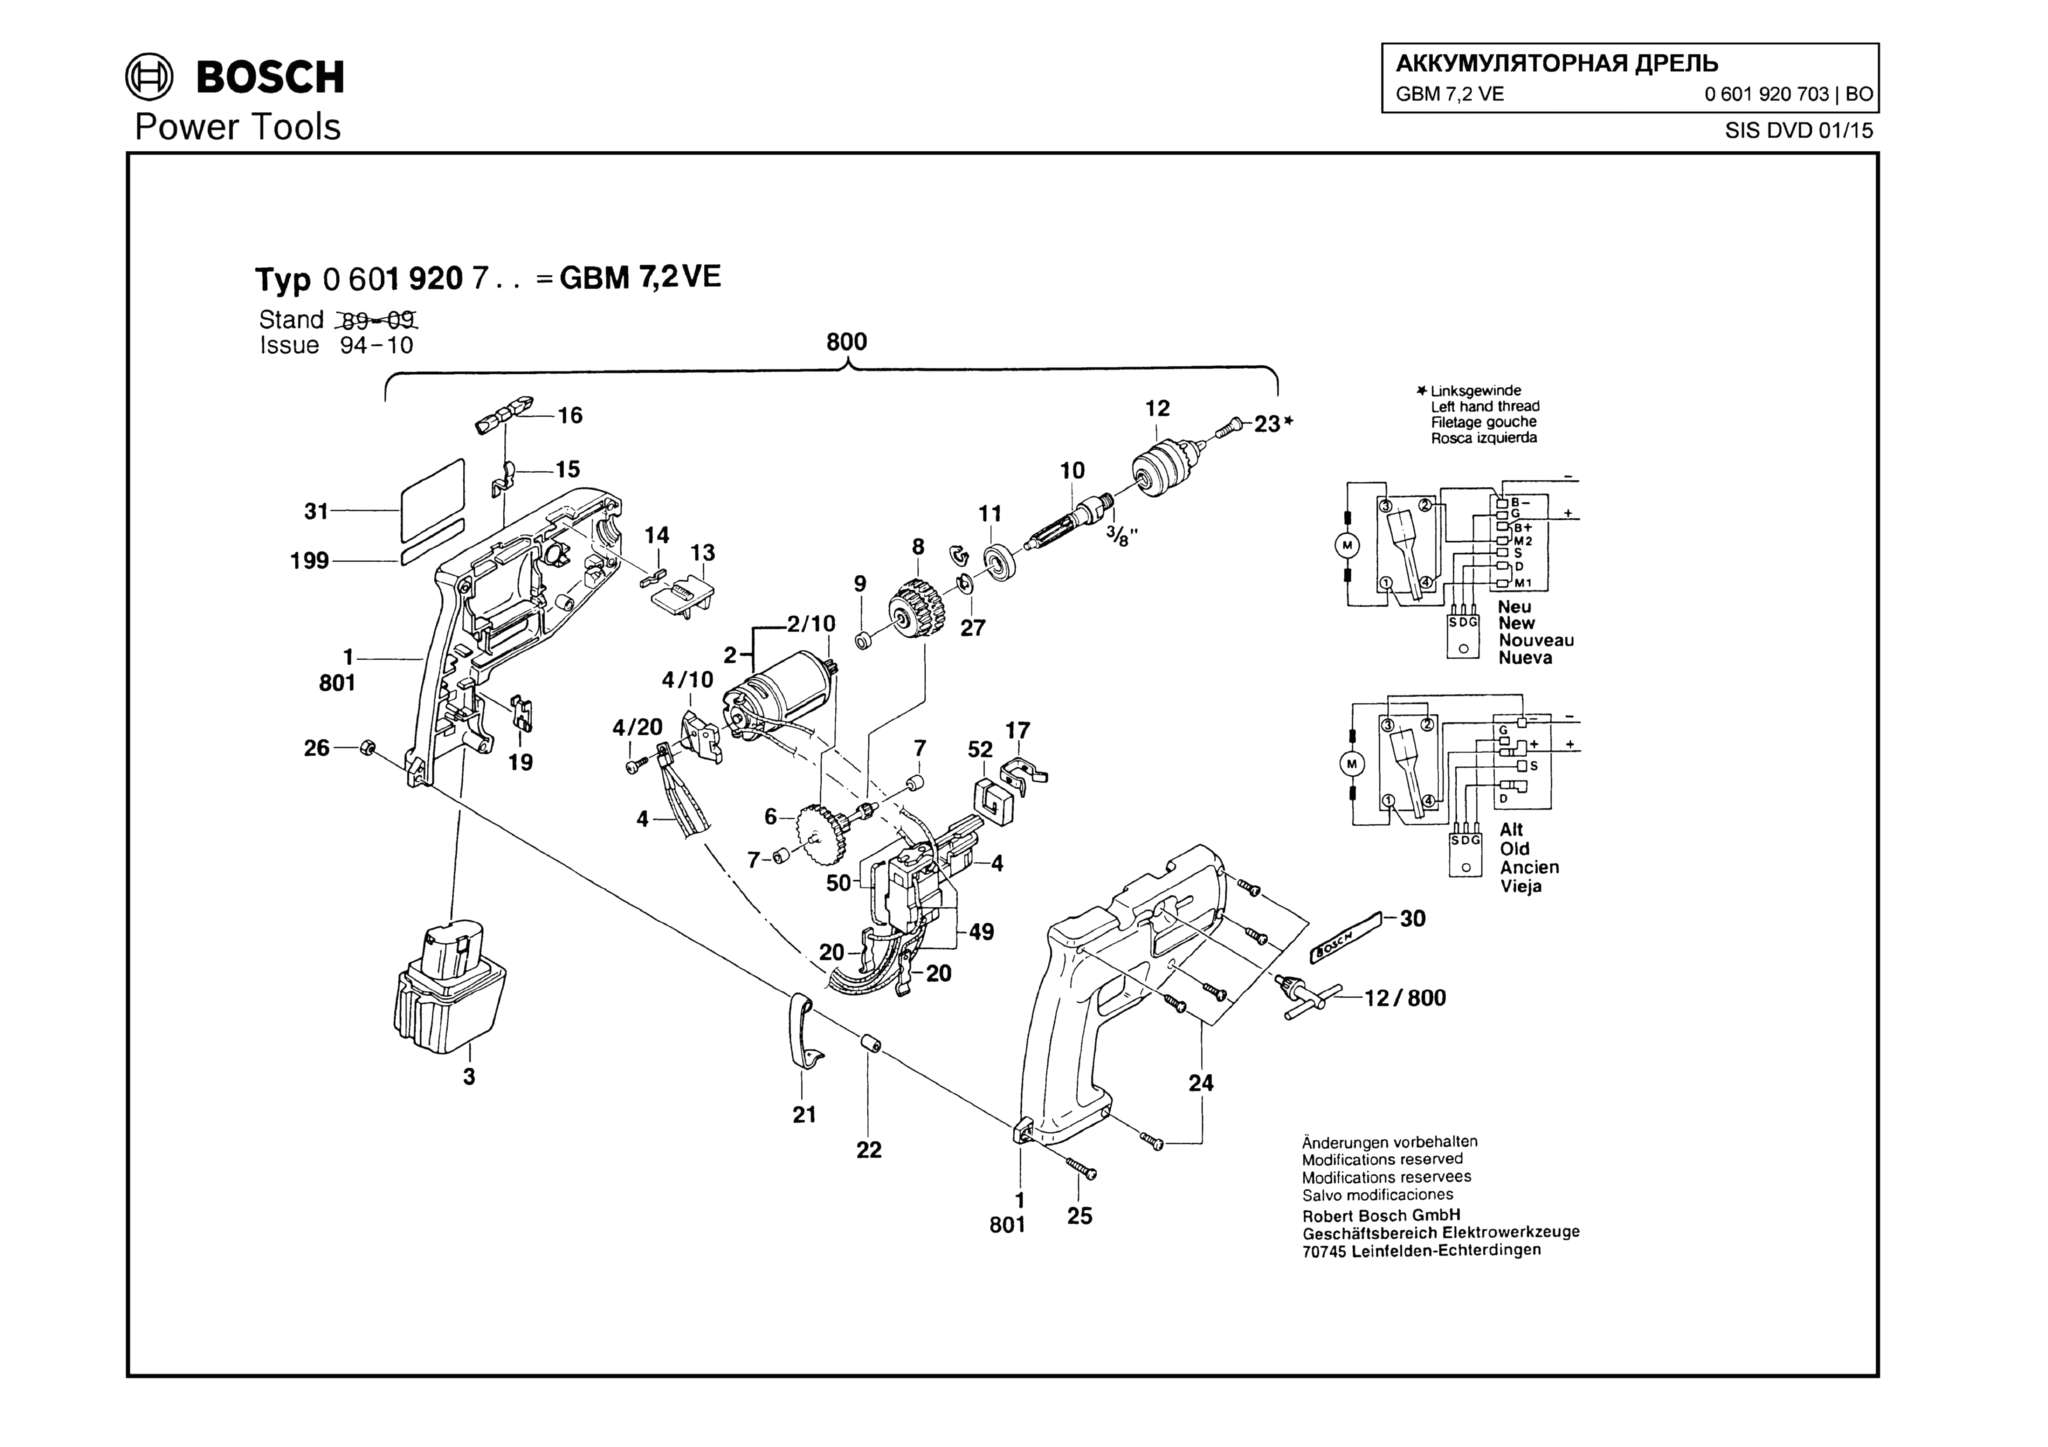 Запчасти, схема и деталировка Bosch GBM 7,2 VE (ТИП 0601920703)